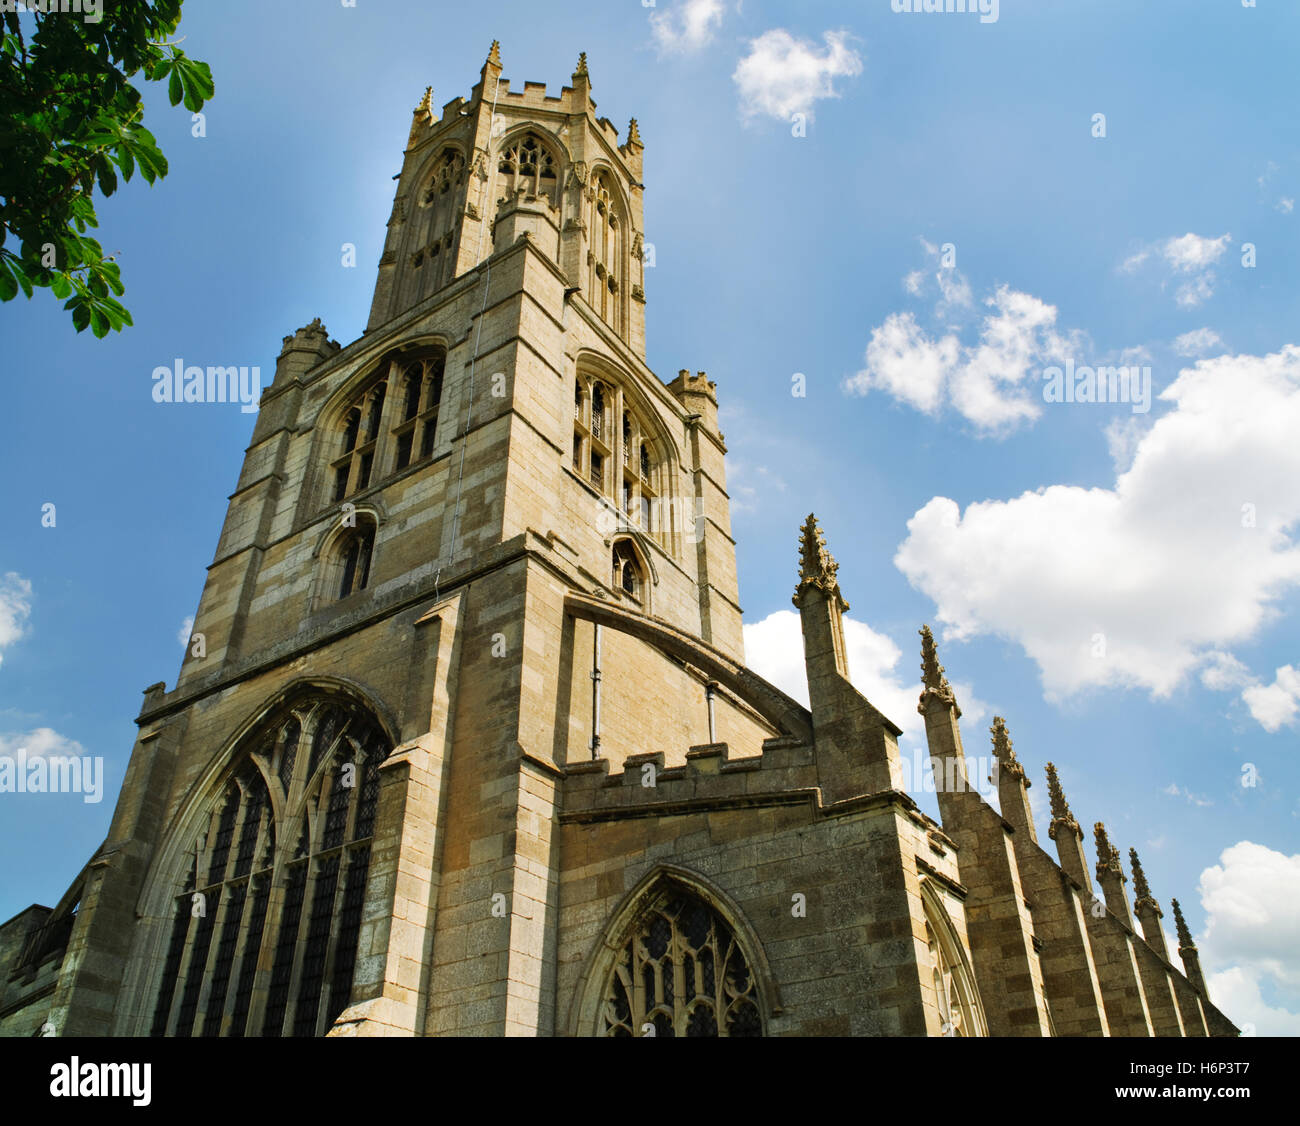 Turm, achteckigen Laterne & S Gang Fotheringhay C15th Kirche, Northamptonshire, mit einem Schwibbogen & wichtigsten Strebepfeiler von Zinnen gekrönt. Stockfoto